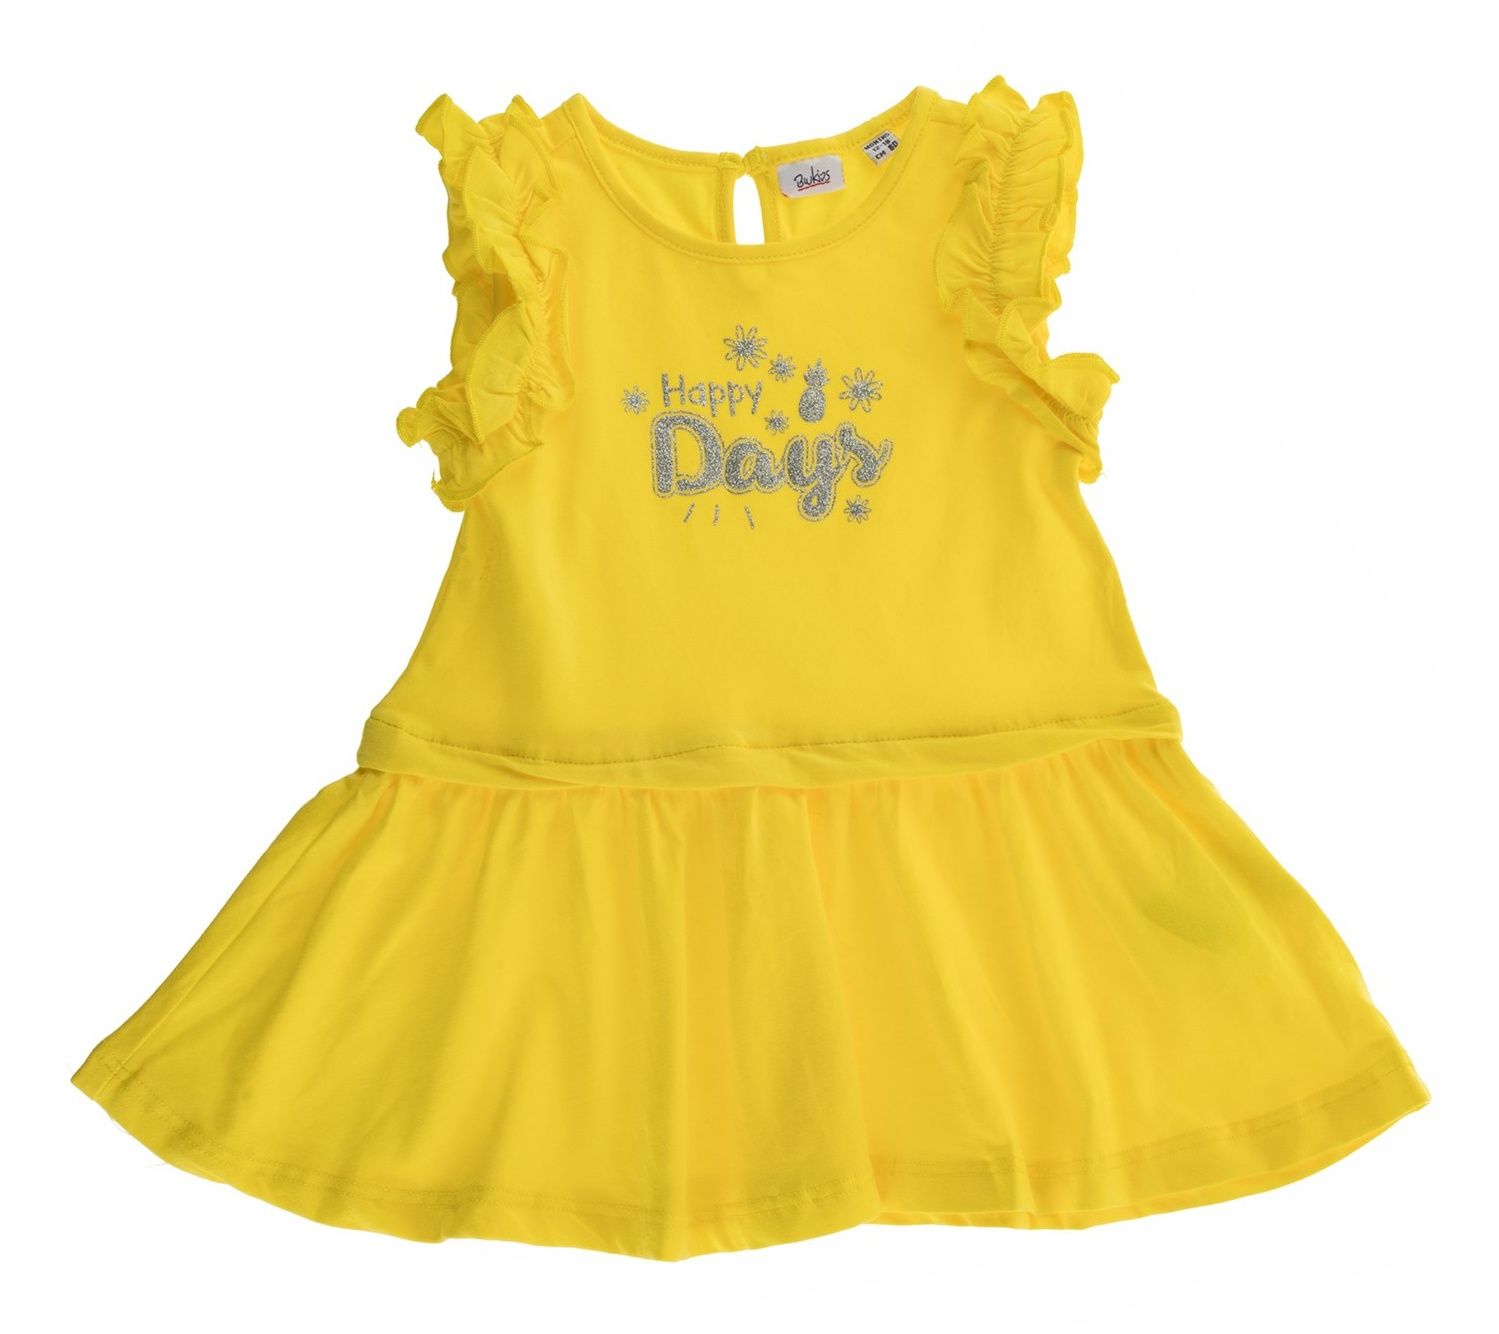 پیراهن نخی آستین حلقه ای نوزادی دخترانه - بلوکیدز - زرد - 1